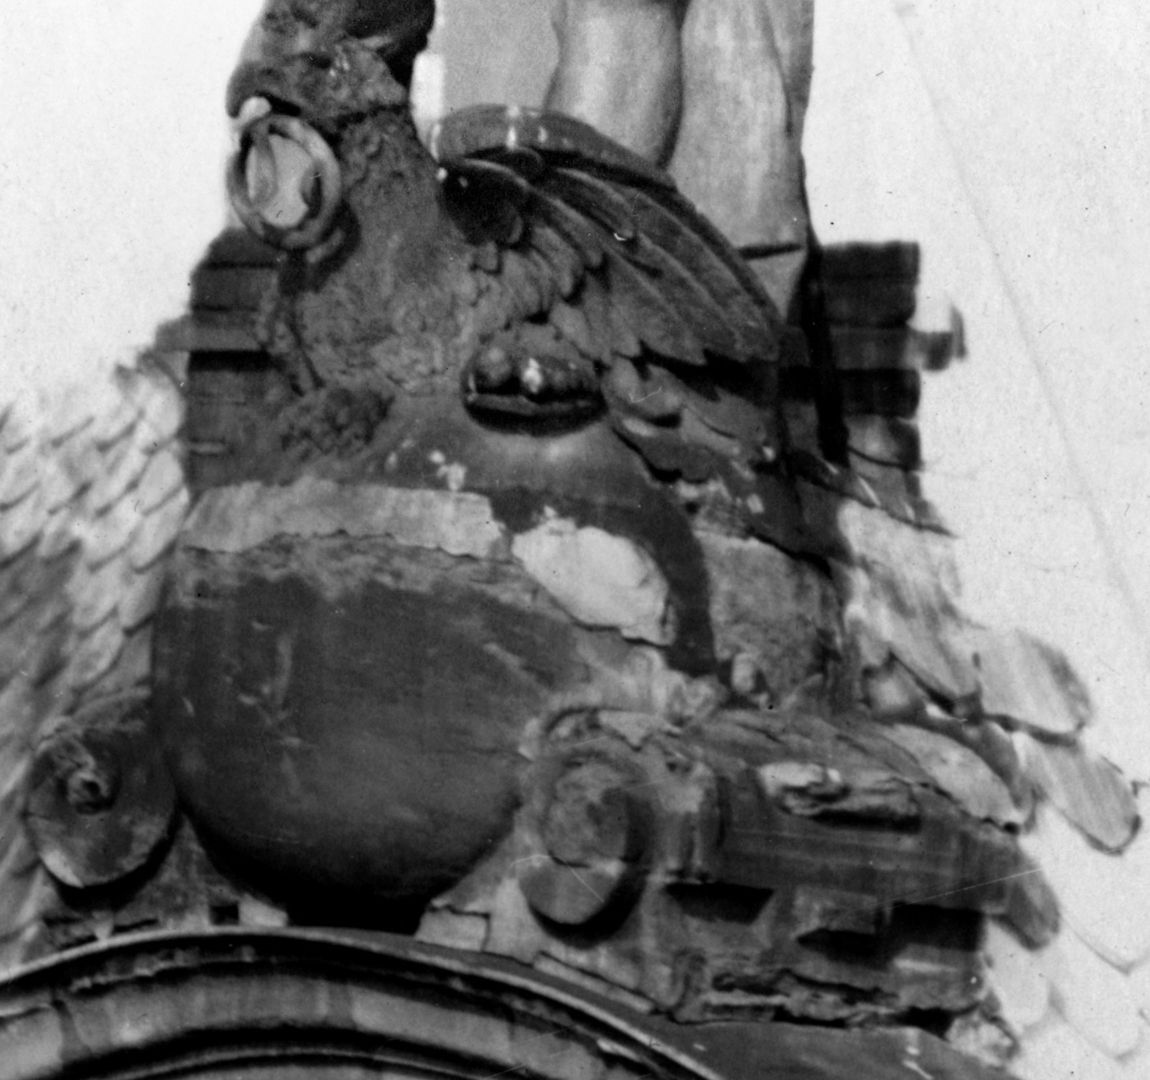 Giebelbekrönung mit Zeus am Pellerhaus Vor den Füßen des Zeus sitzt ein Adler auf einer Kugel mit einem Ring im Schnabel